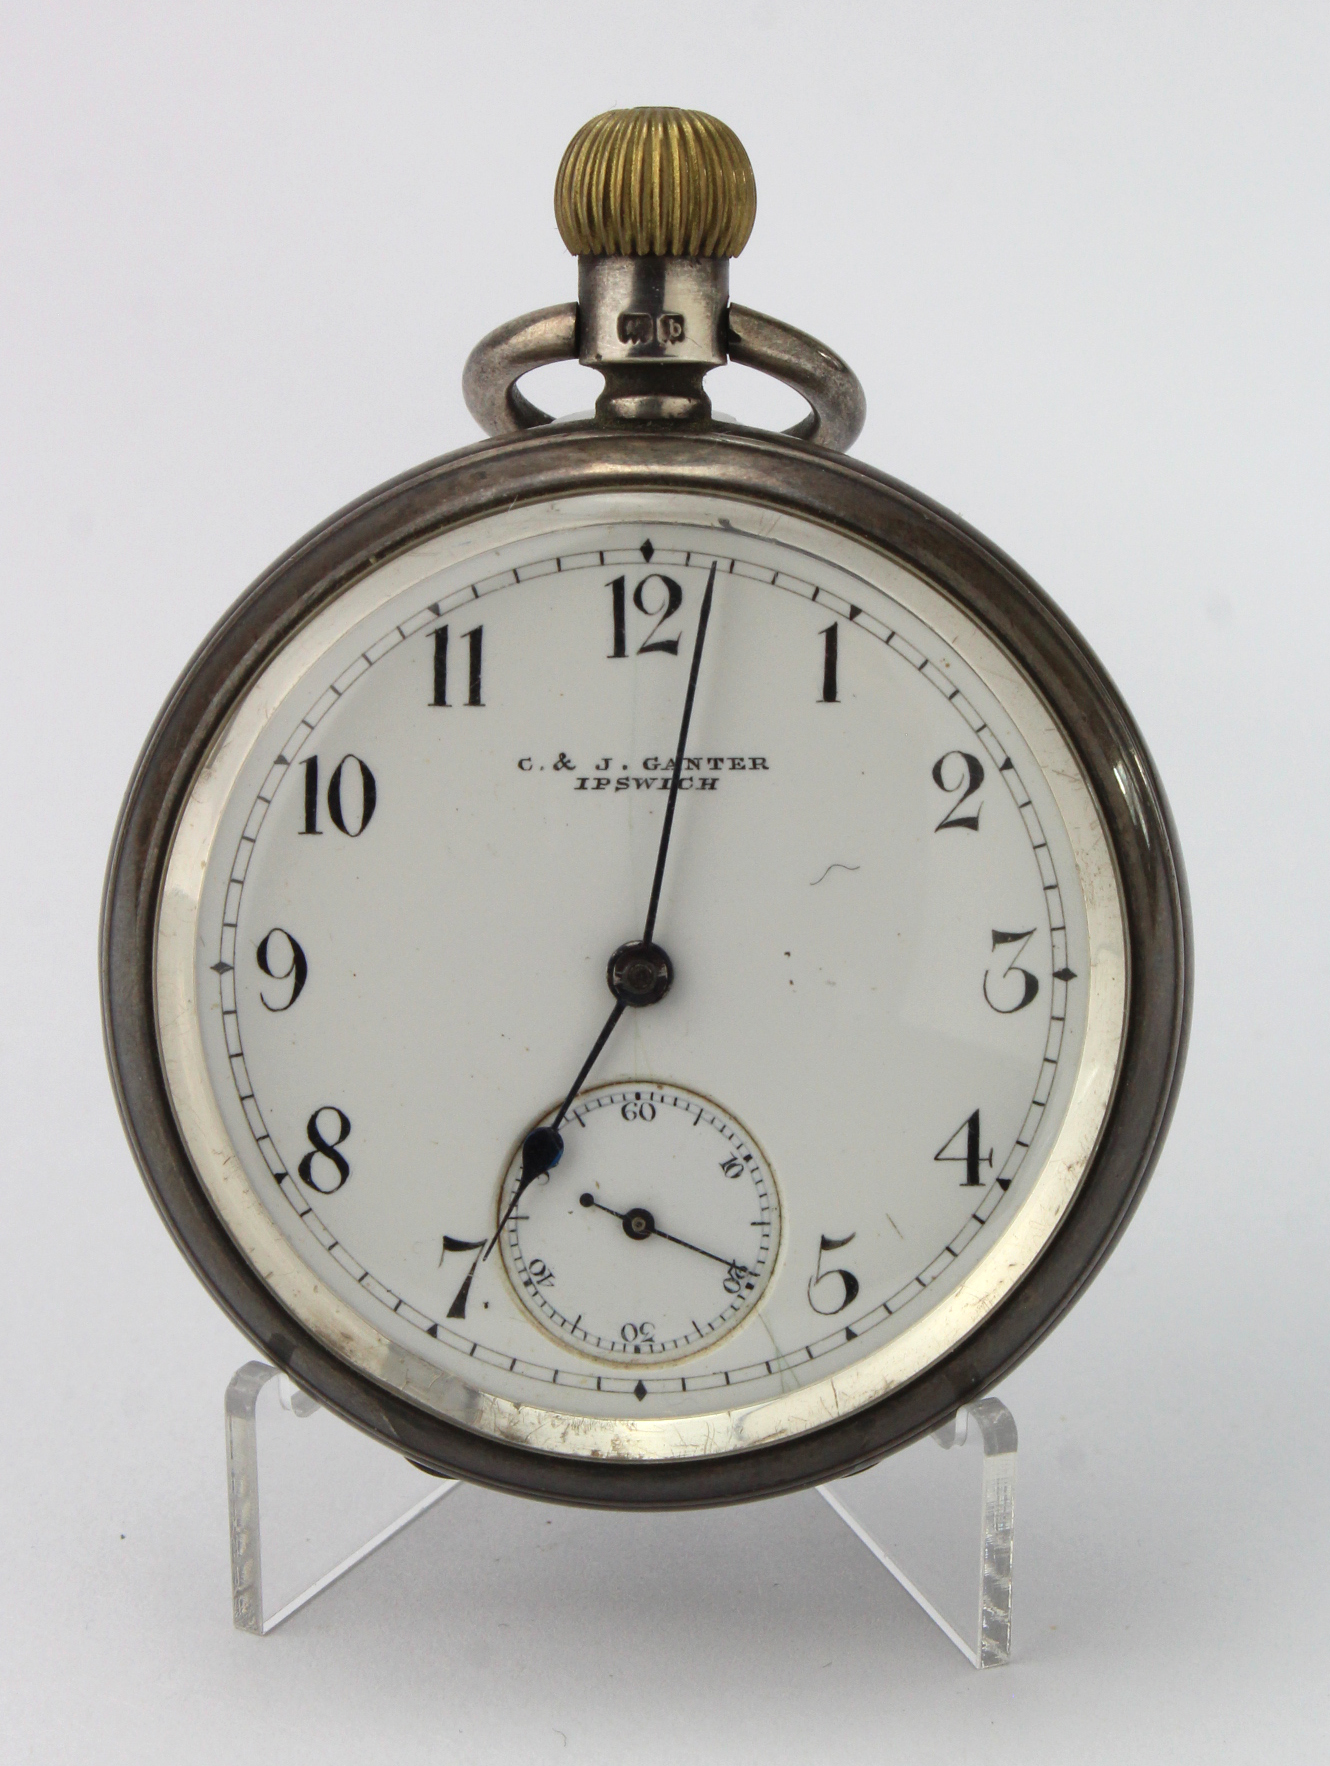 Gents silver cased open face pocket watch by "C & J Ganter Ipswich". Hallmarked Birmingham 1901. The